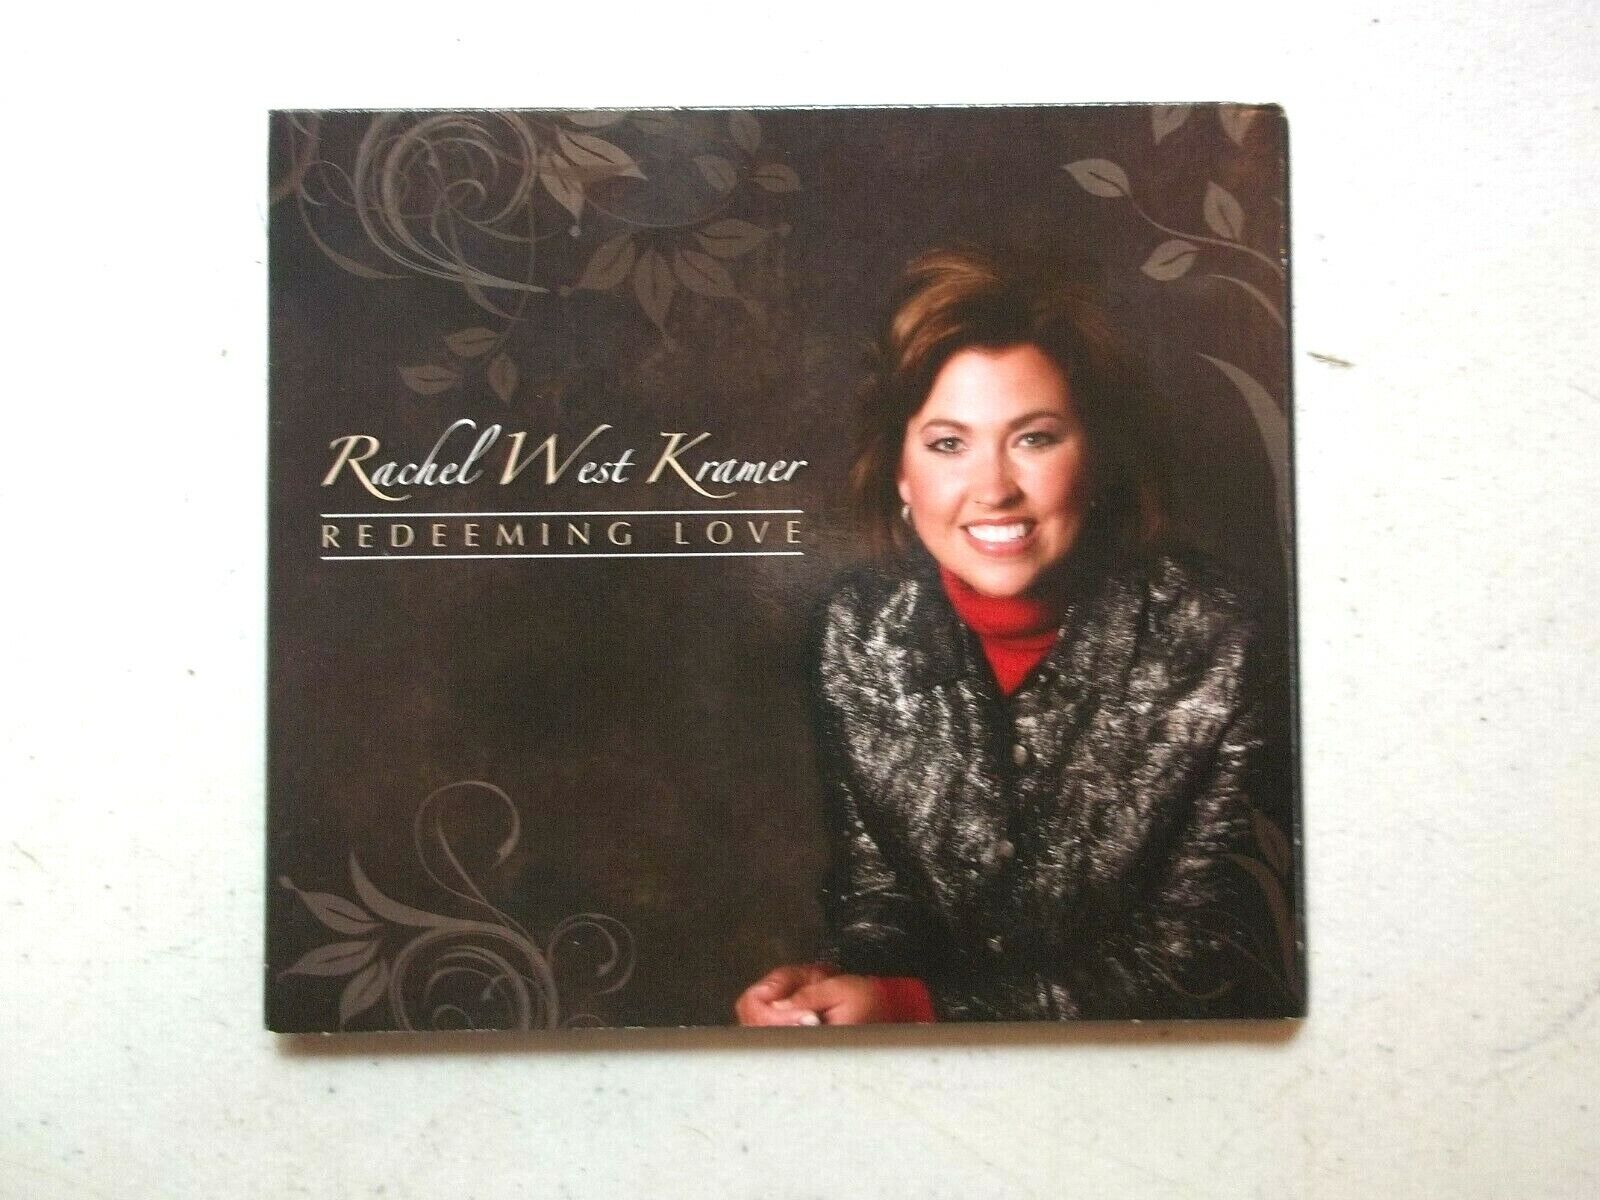 Rachel West Kramer - Redeeming Love CD Clean & Great Playing CD